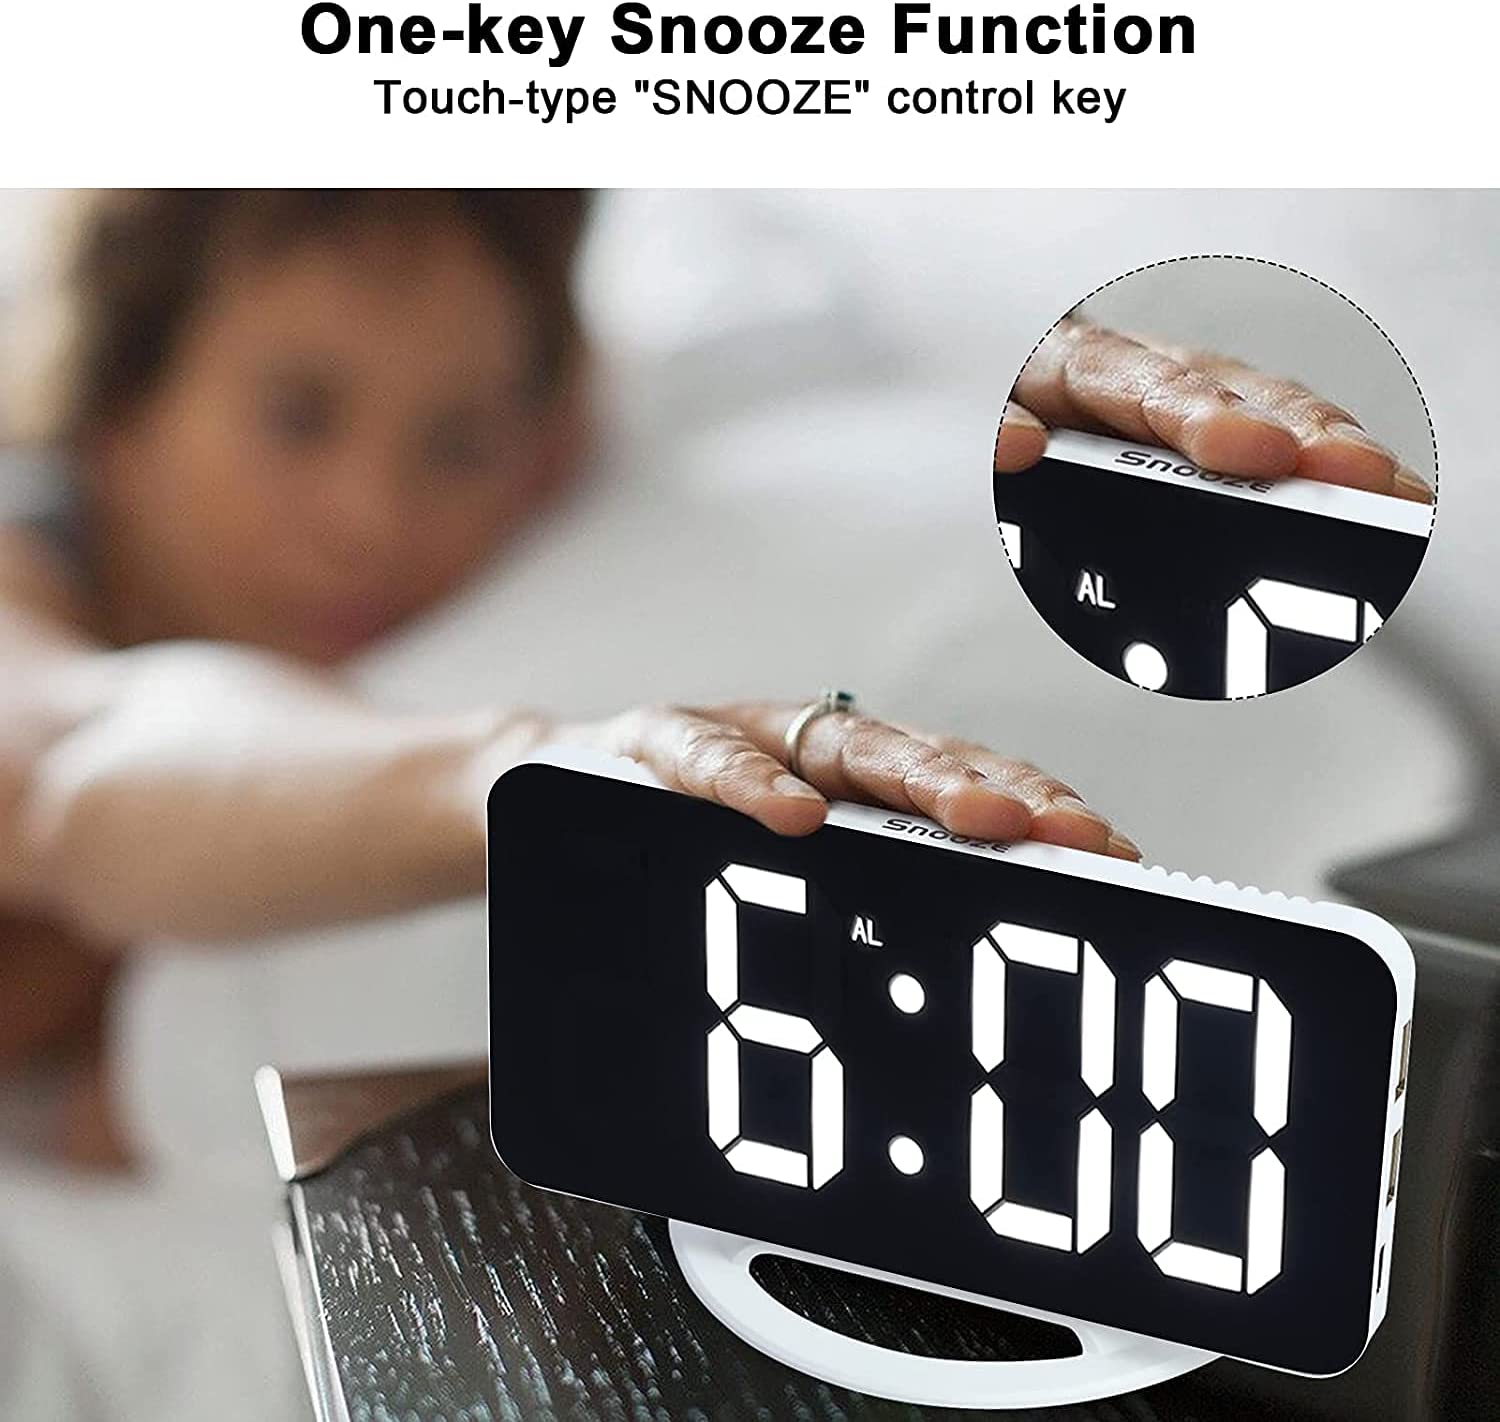 ساعت رومیزی دیجیتال Digital Alarm Clock - ارسال ۱۰ الی ۱۵ روز کاری